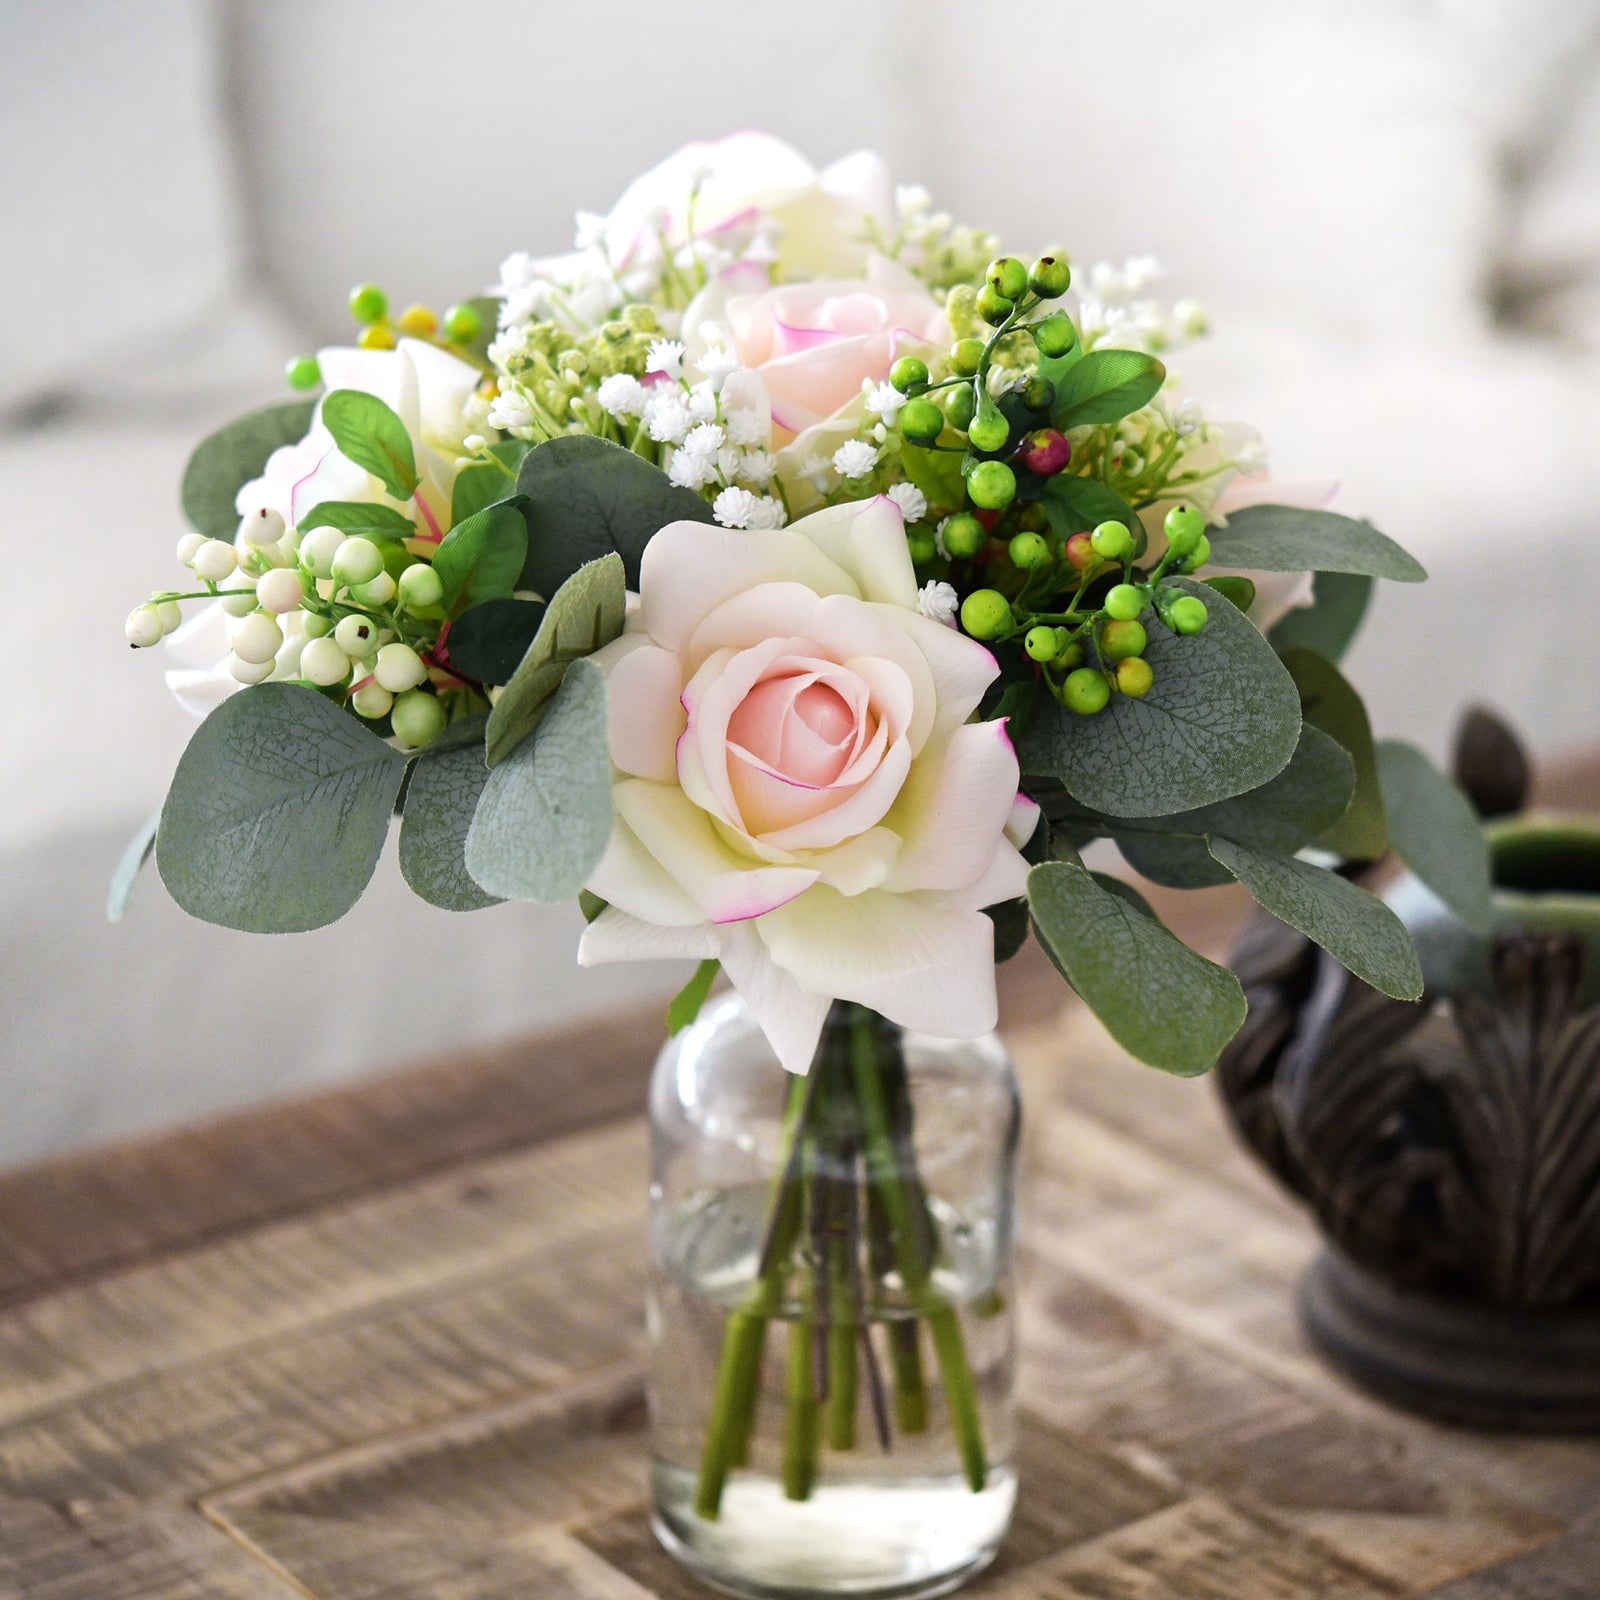 FiveSeasonStuff Light Peach Real Touch Garden Rose Artificial Flowers Wedding, Bridal, Home Décor 5 Stems 9.8"